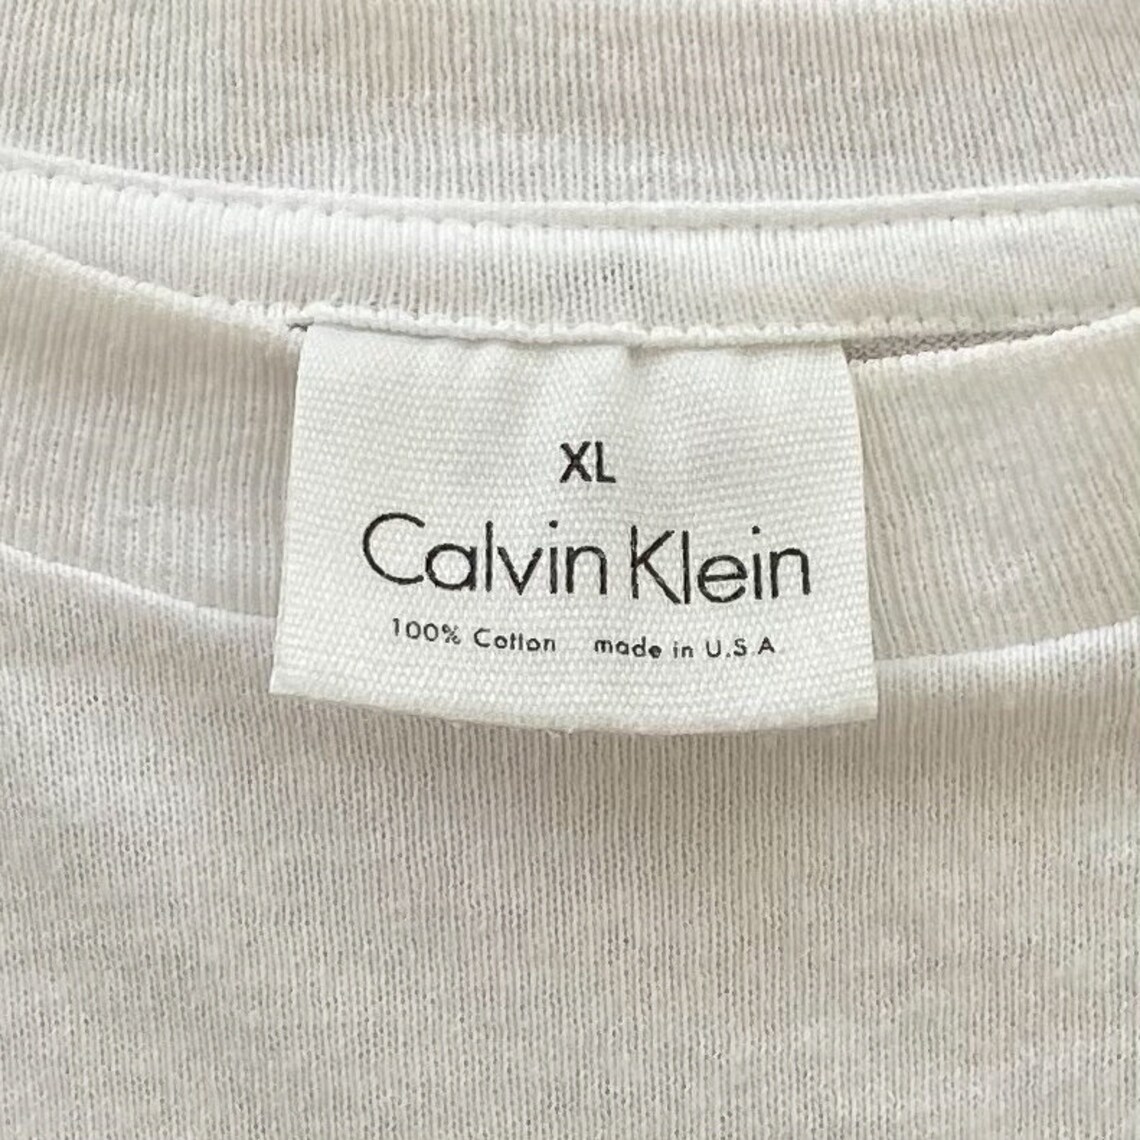 90s Calvin Klein One Unisex Fragrance Promo T-Shirt. 1990s CK | Etsy